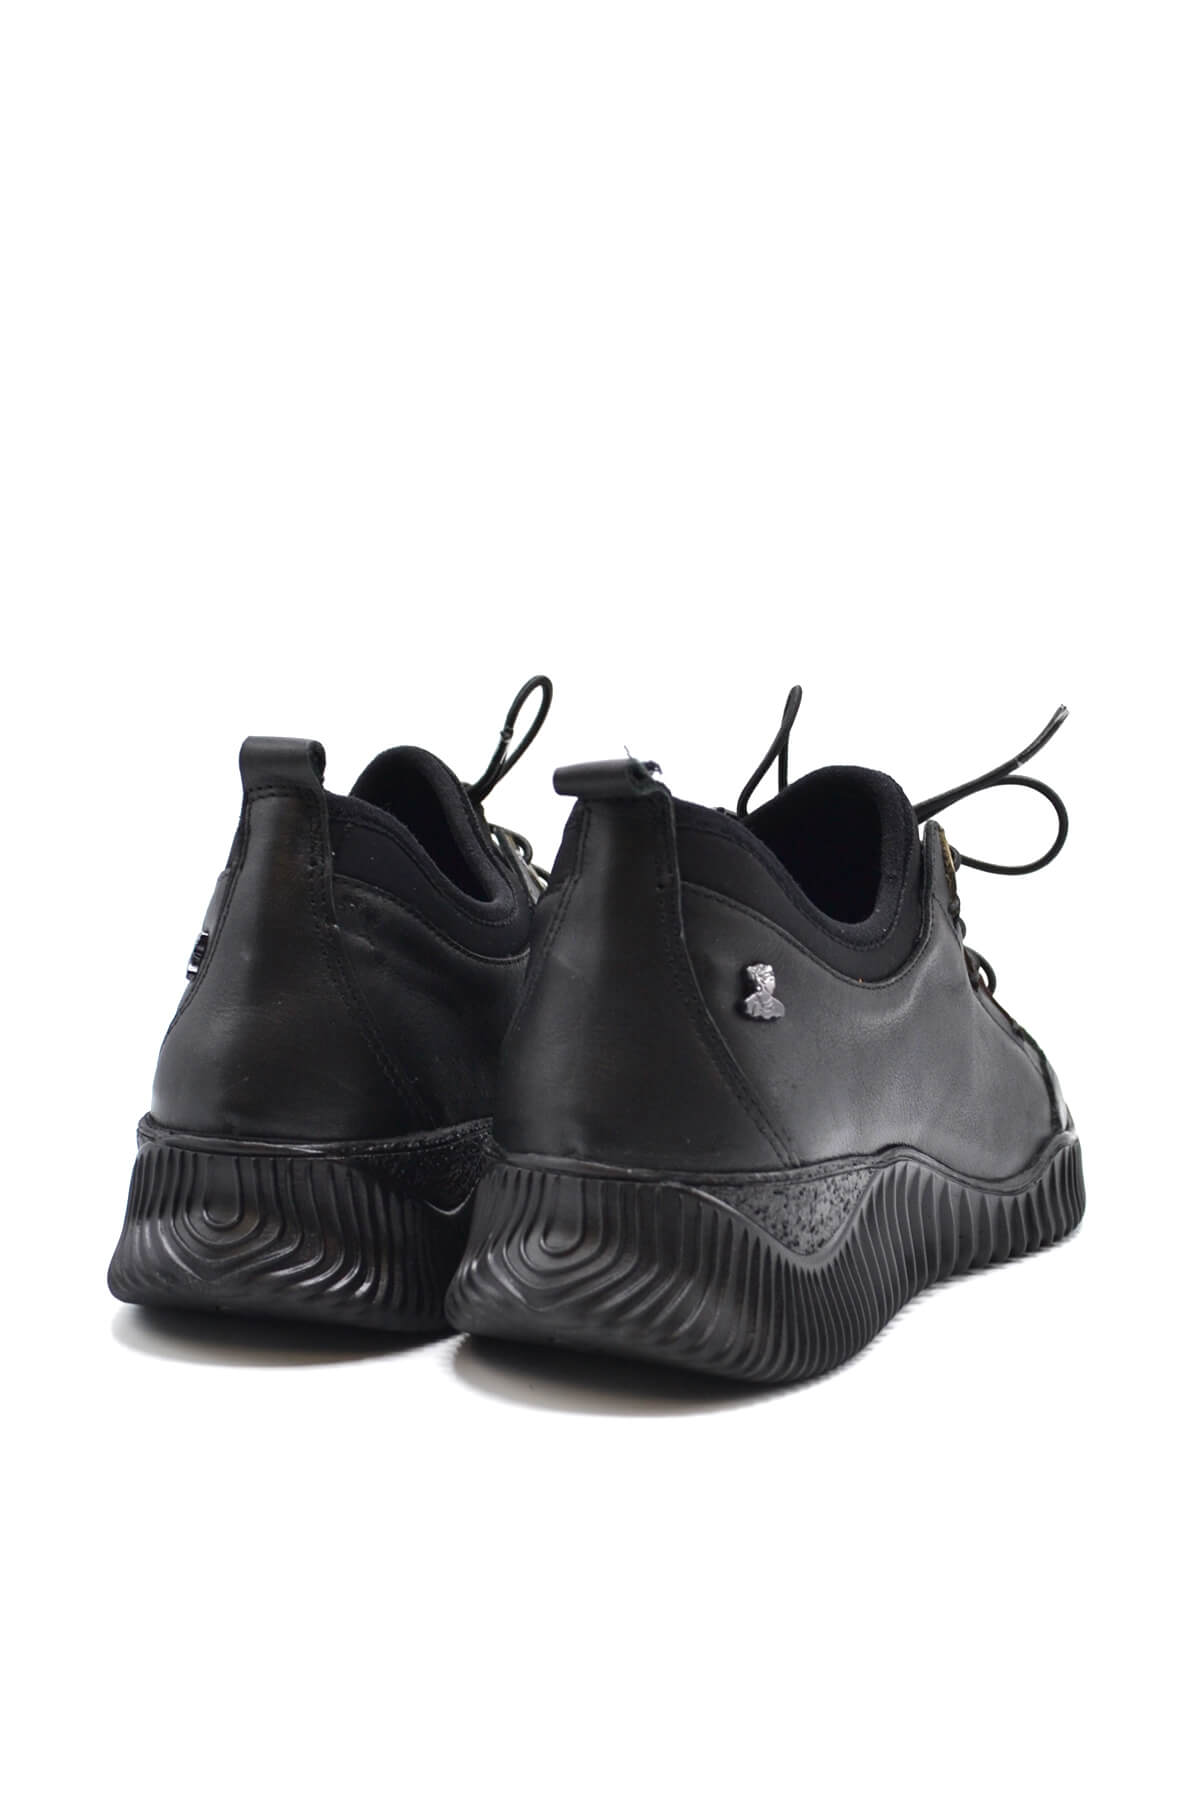 Kadın Comfort Deri Ayakkabı Siyah 1953855K